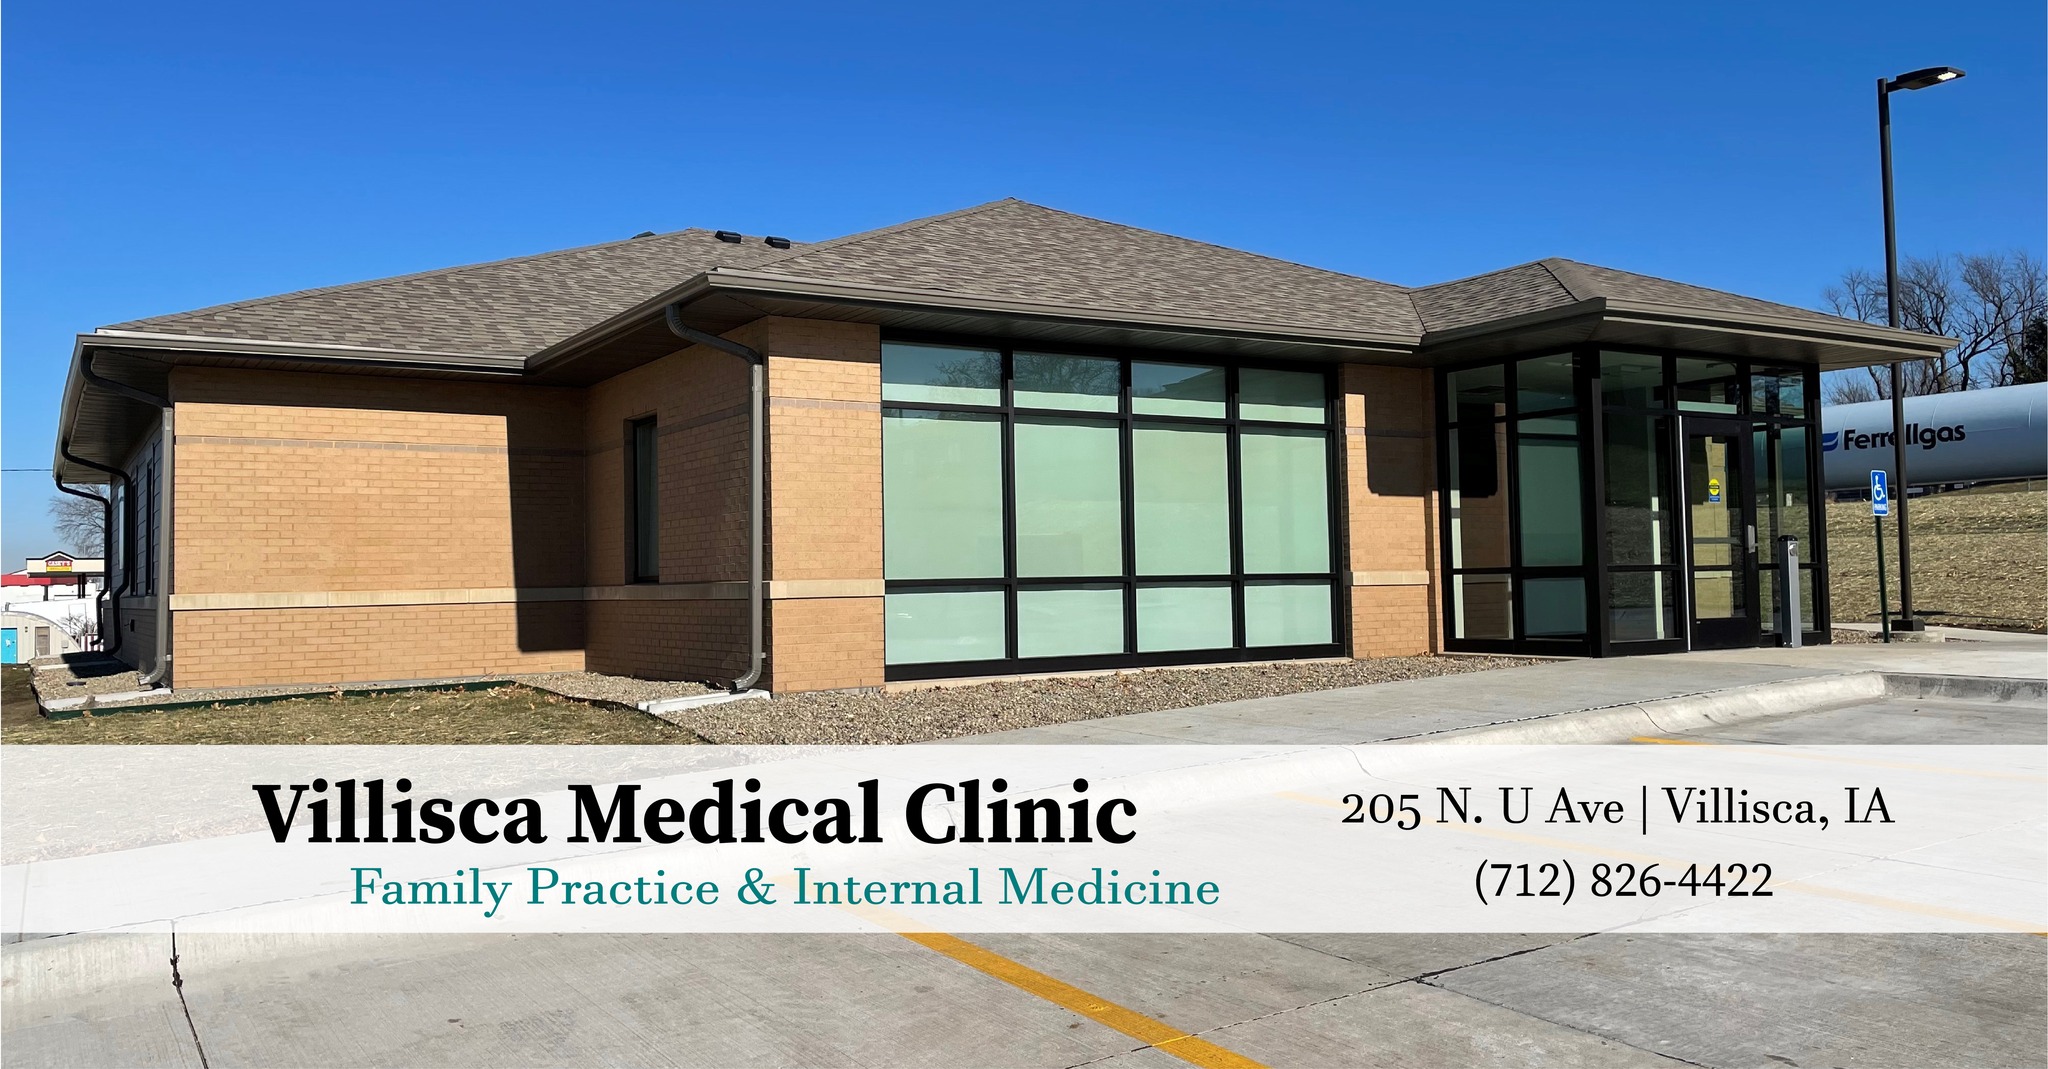 Villisca Medical Clinic